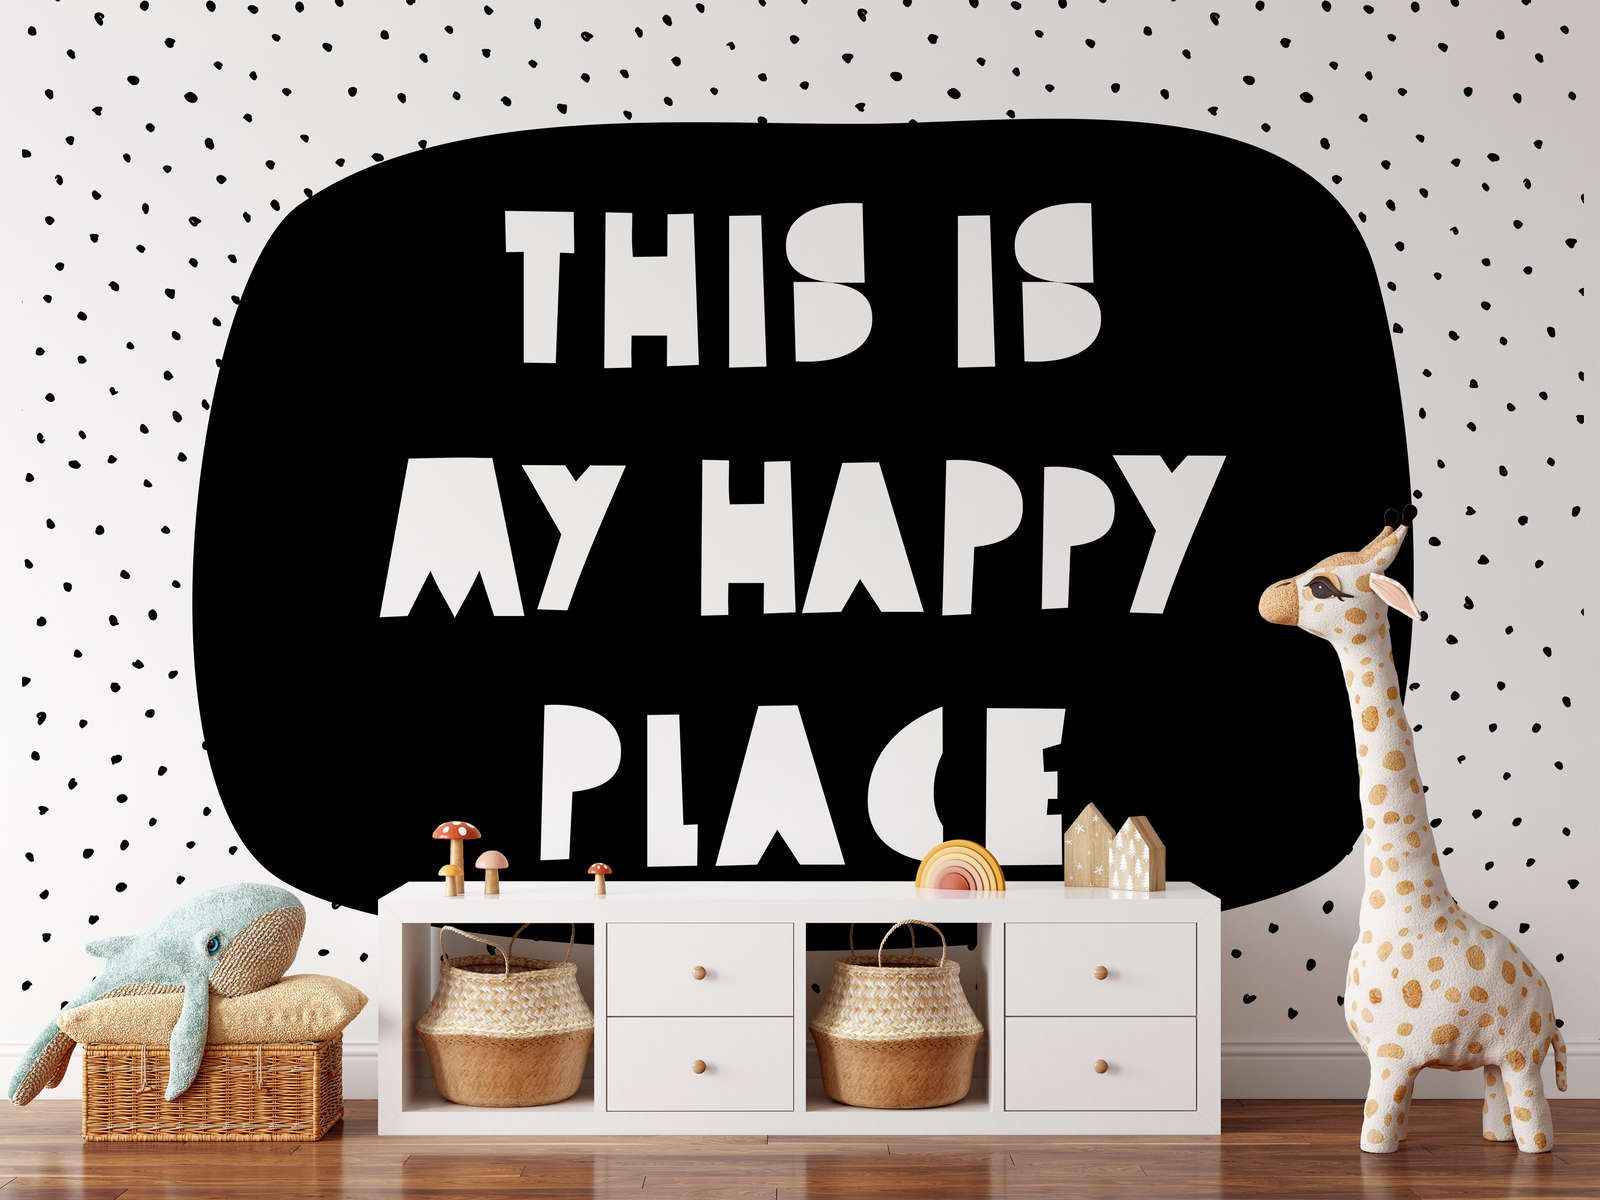             Digital behang voor kinderkamer met opschrift "This is my happy place" - Glad & licht glanzend vlies
        